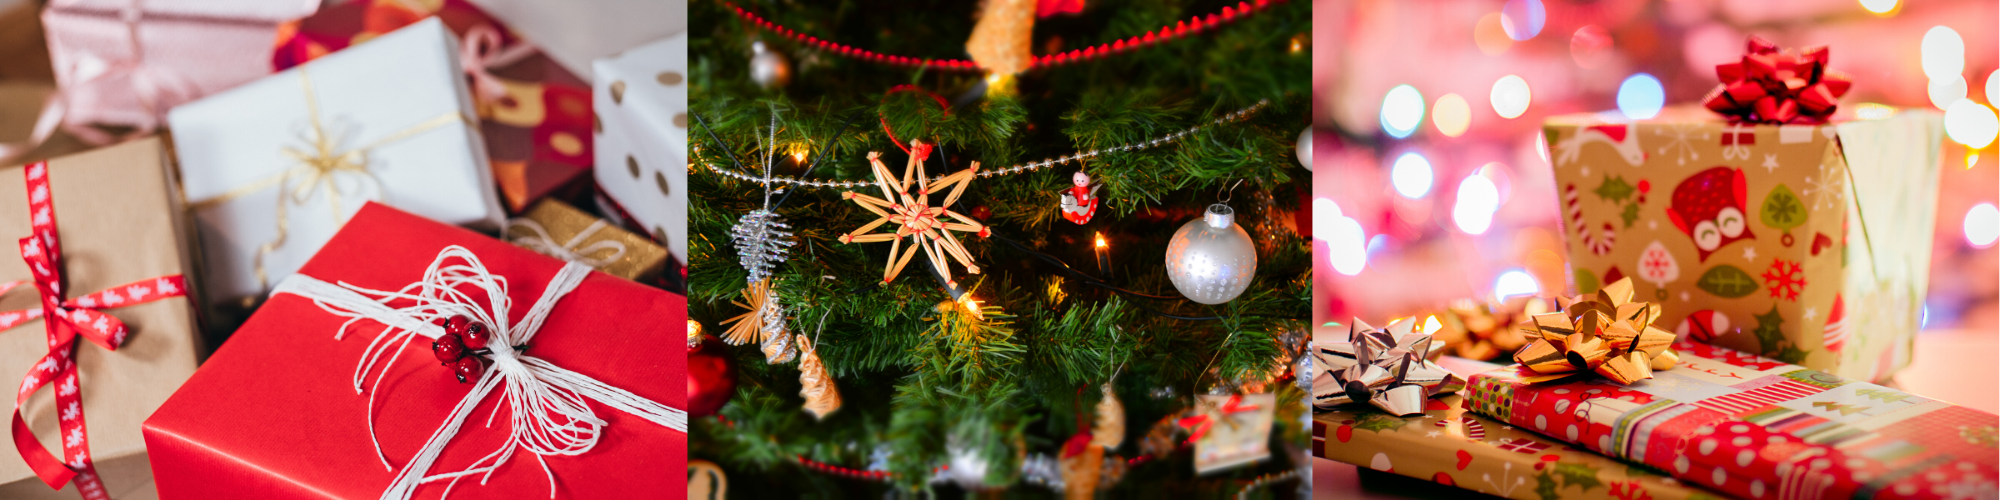 Christmas gifts and a Christmas tree